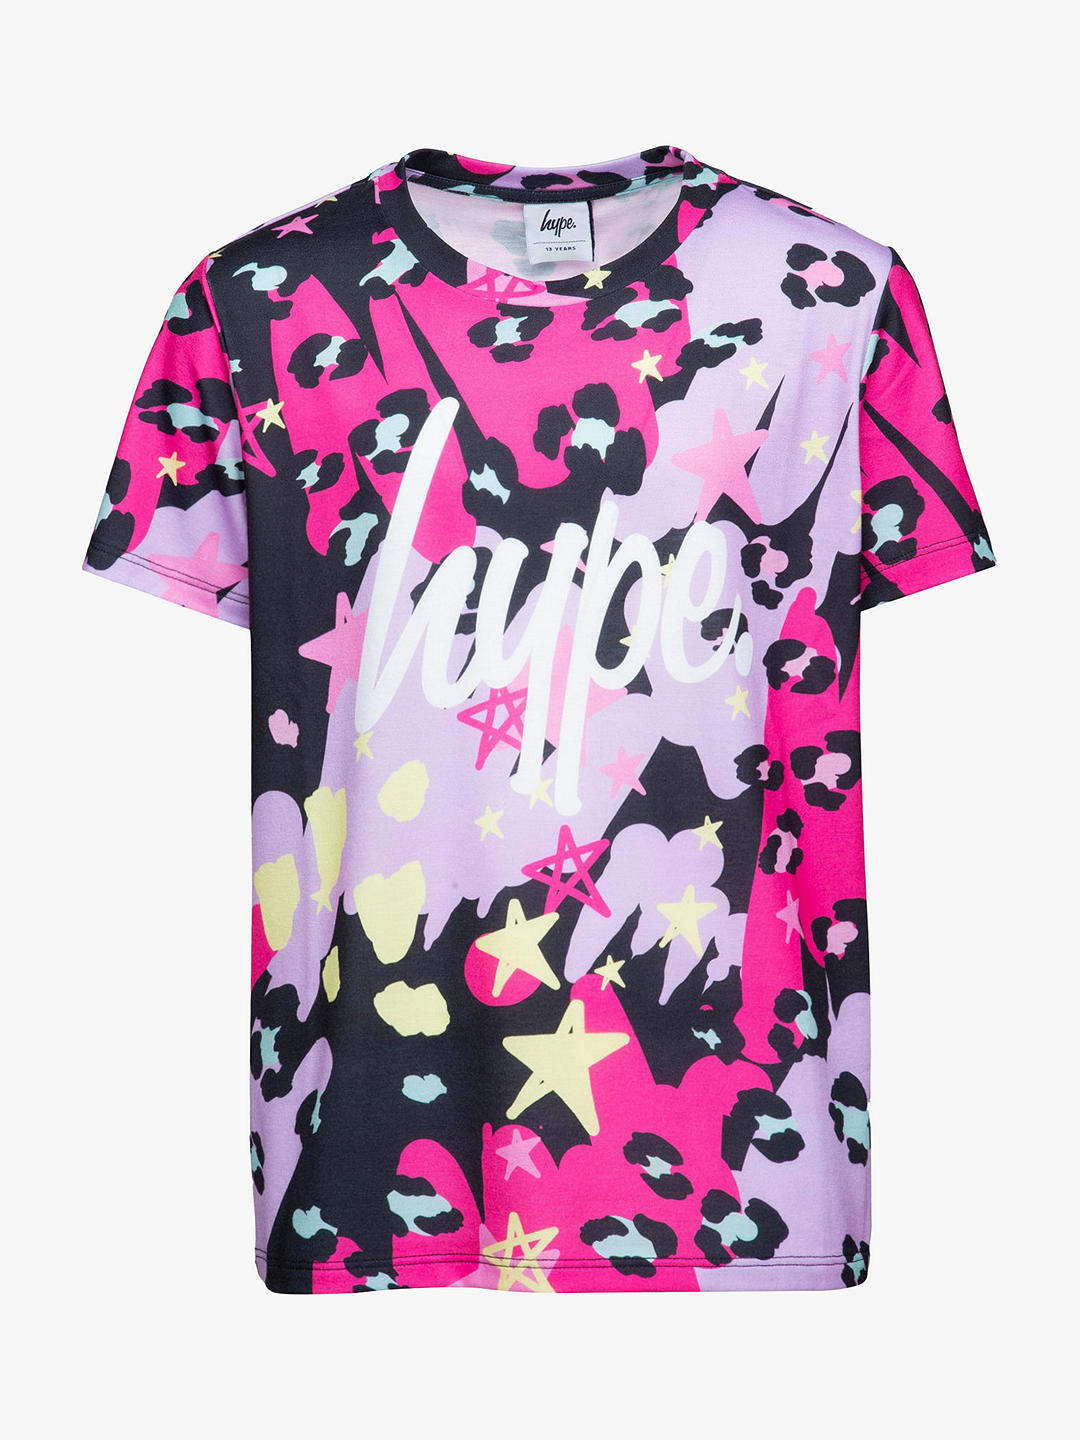 Hype Kids' Leopard Doodle T-Shirt, Multi